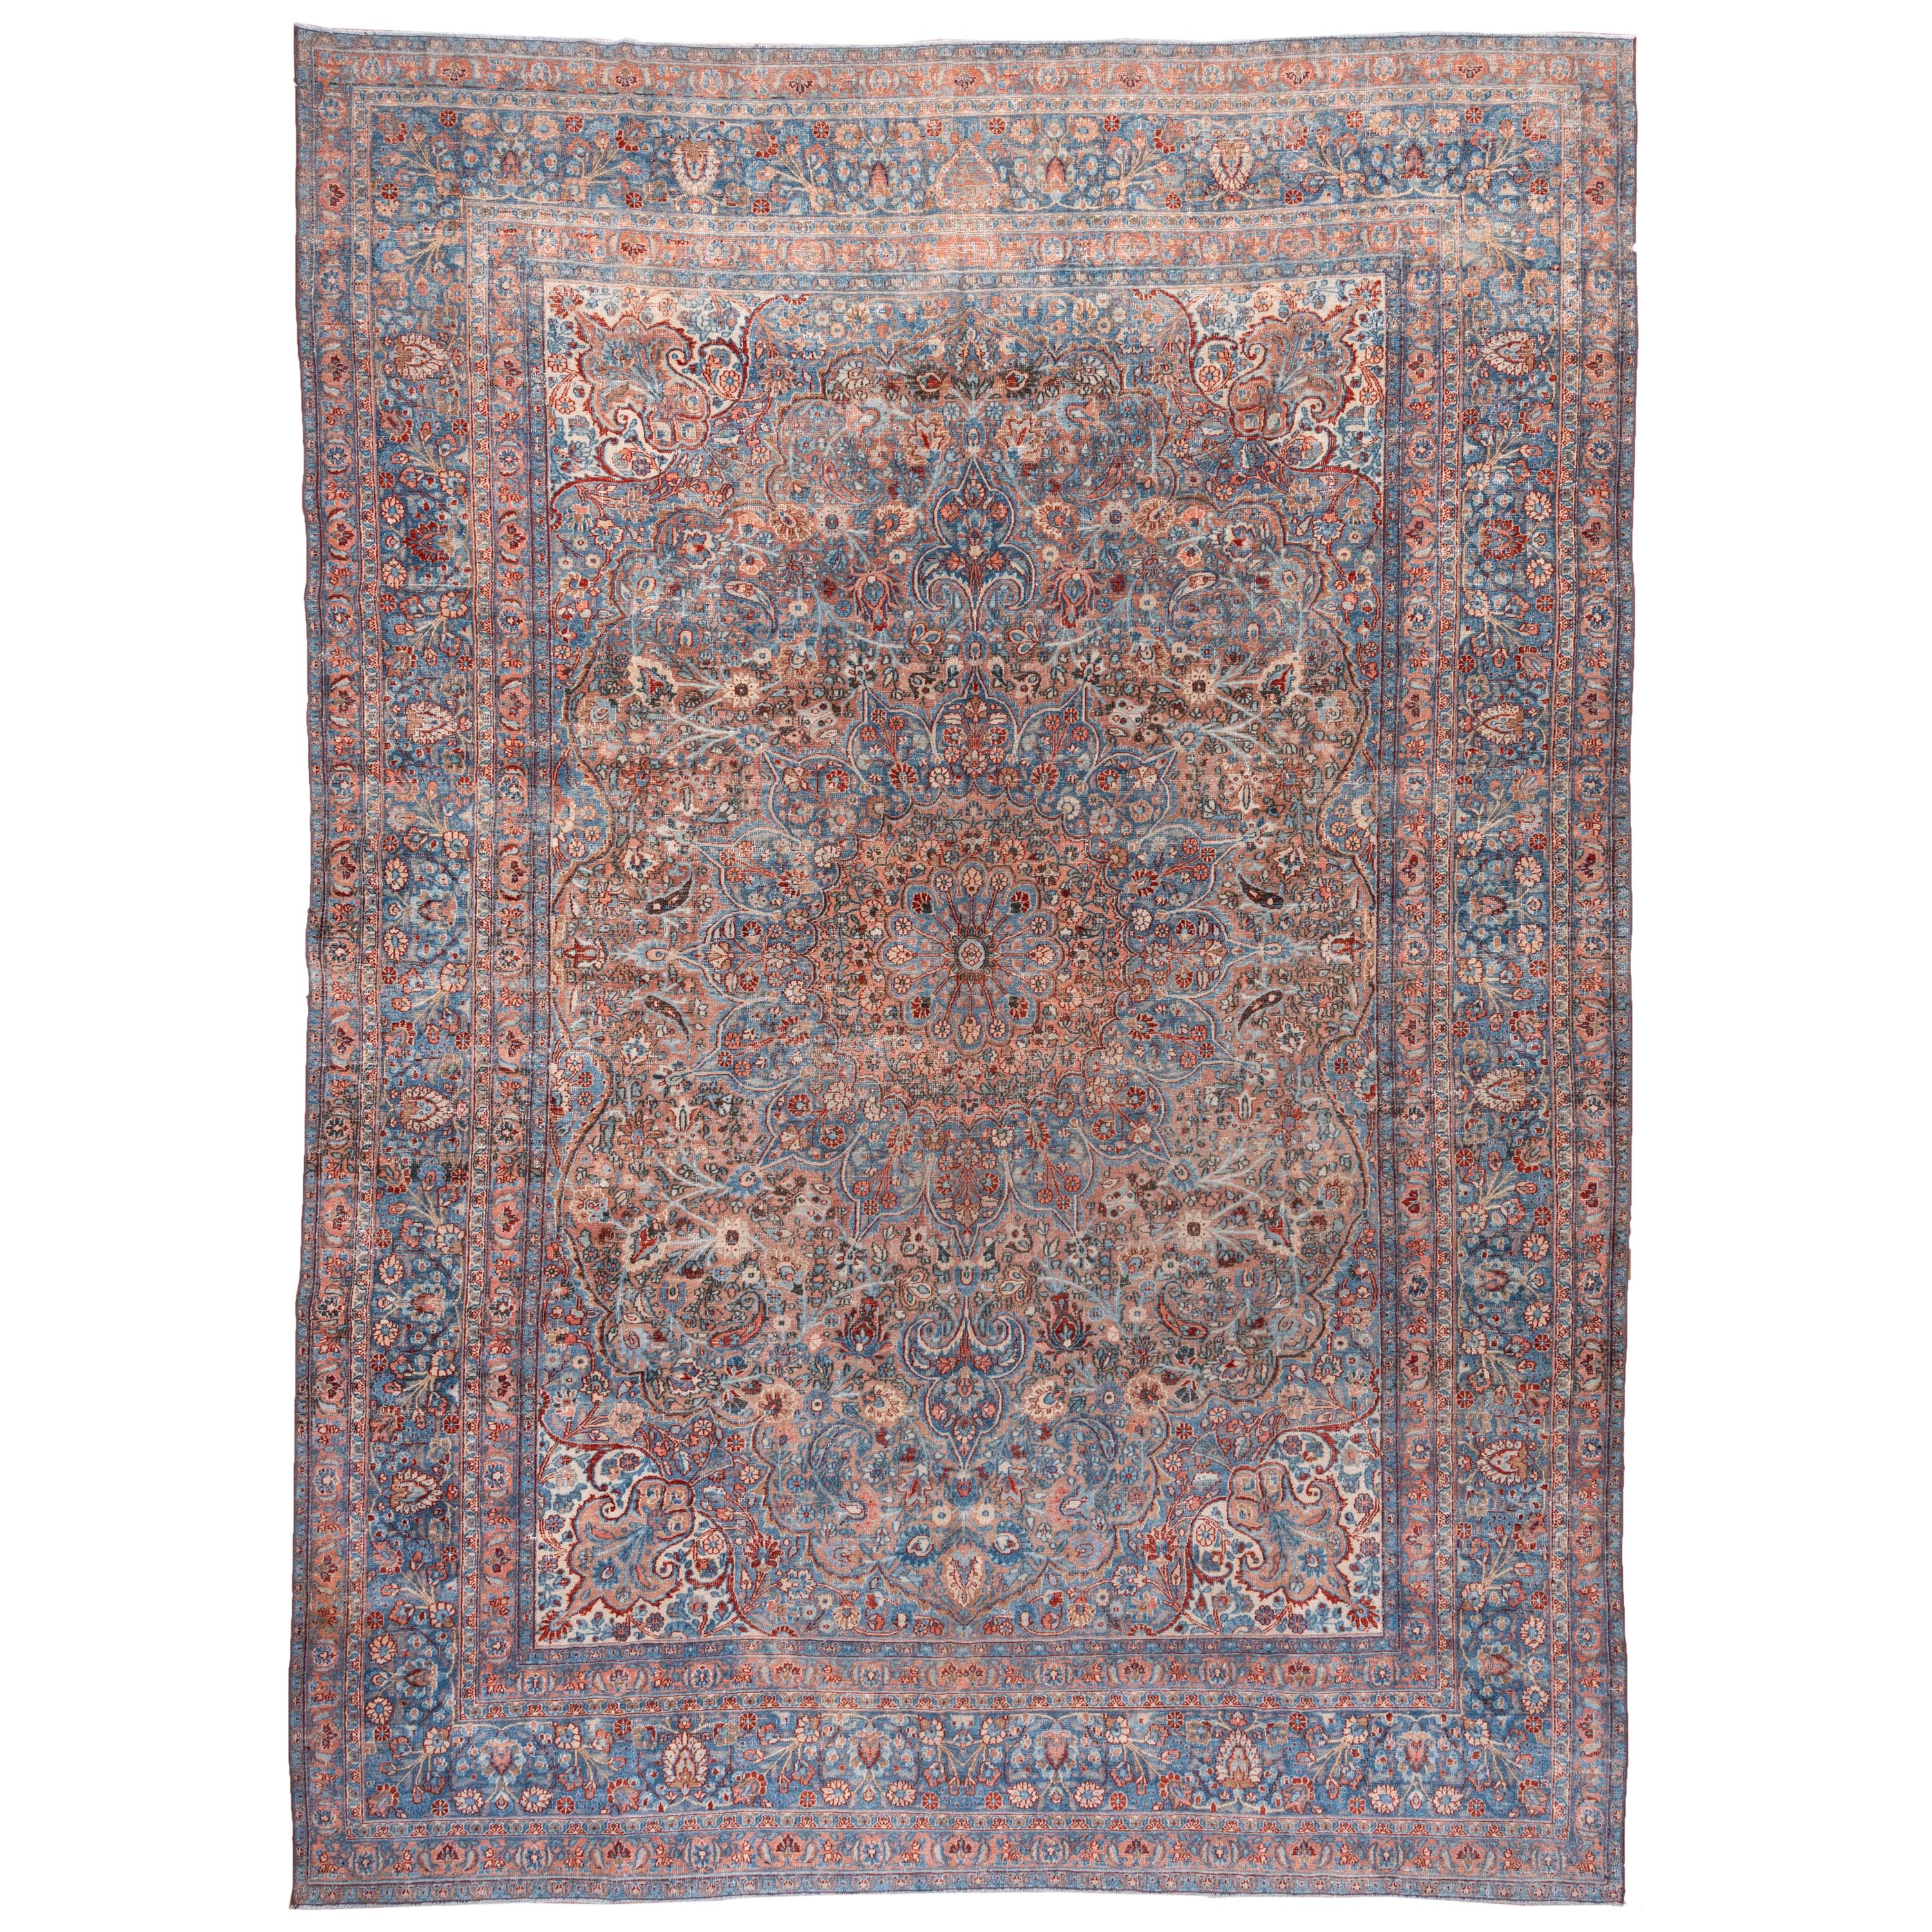 Antique Persian Khorassan Carpet, Blue Tones, Pink Tones, Salmon Tones